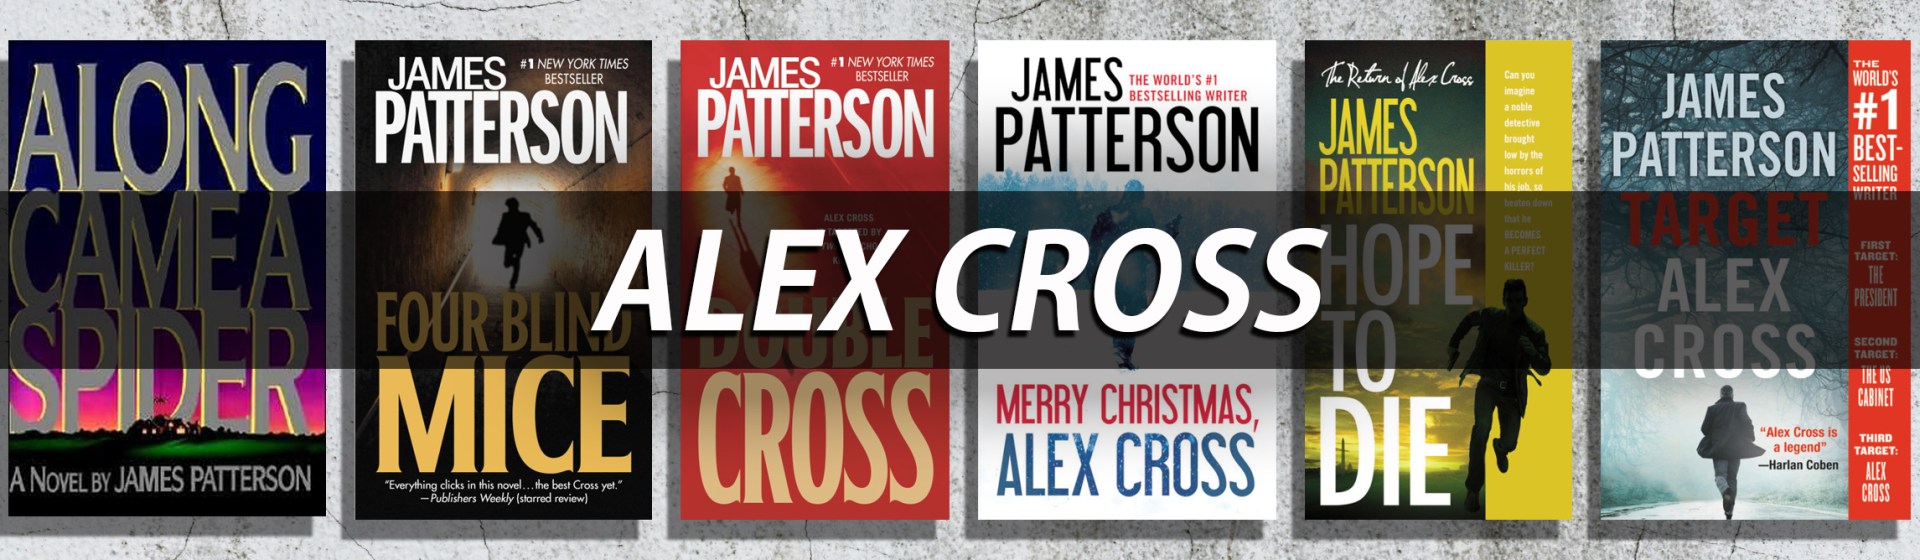 patterson james alex cross